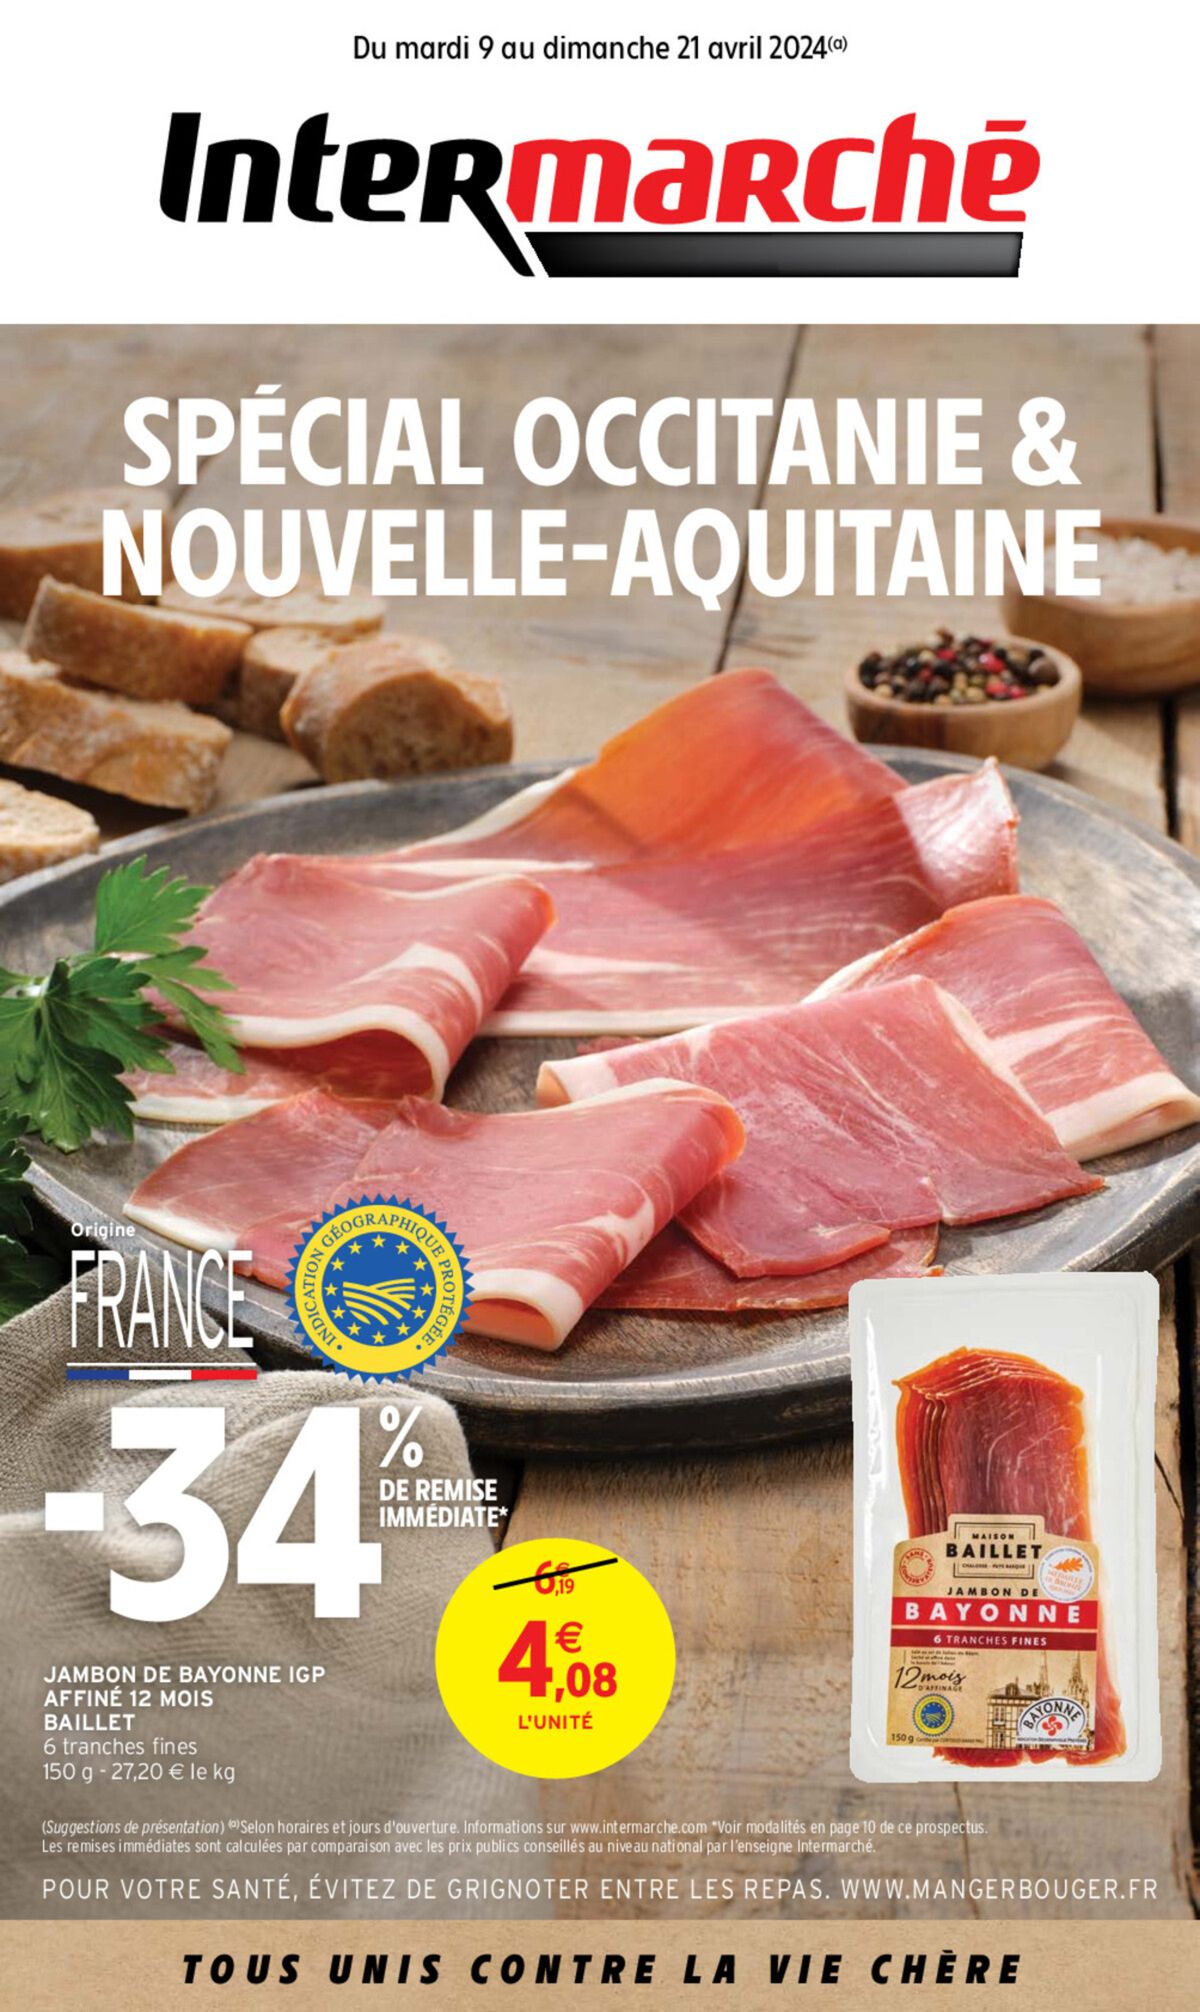 Catalogue Special occitanie & nouvelle-aquitaine, page 00001